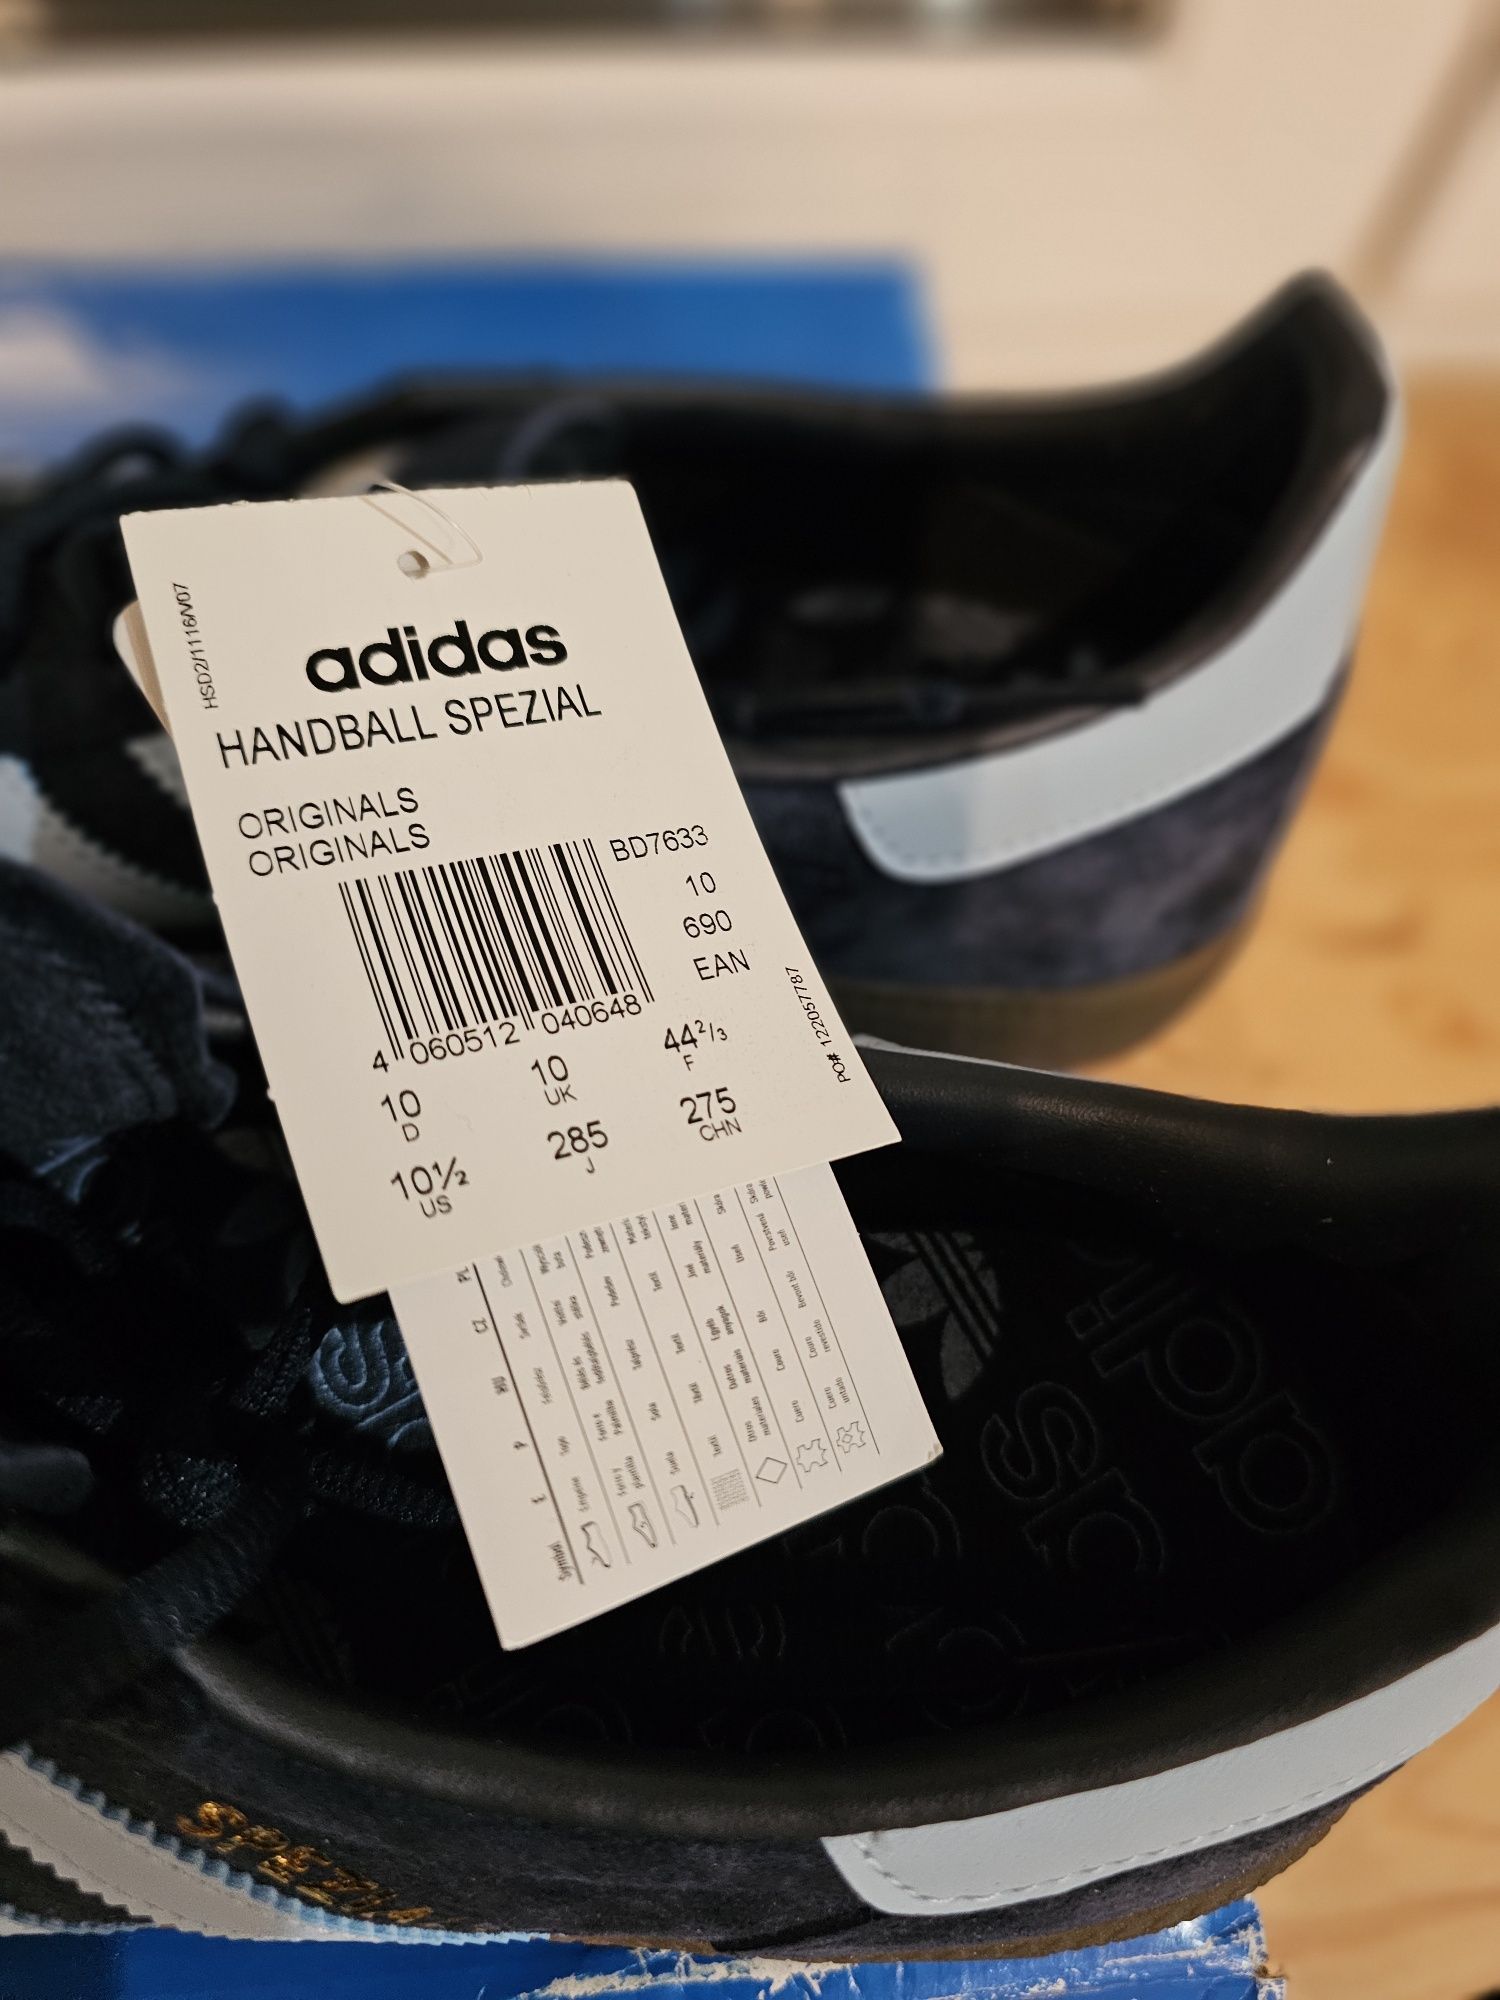 Buty nowe Adidas handball spezial Eu 44 ⅔ wkładka 28,5cm